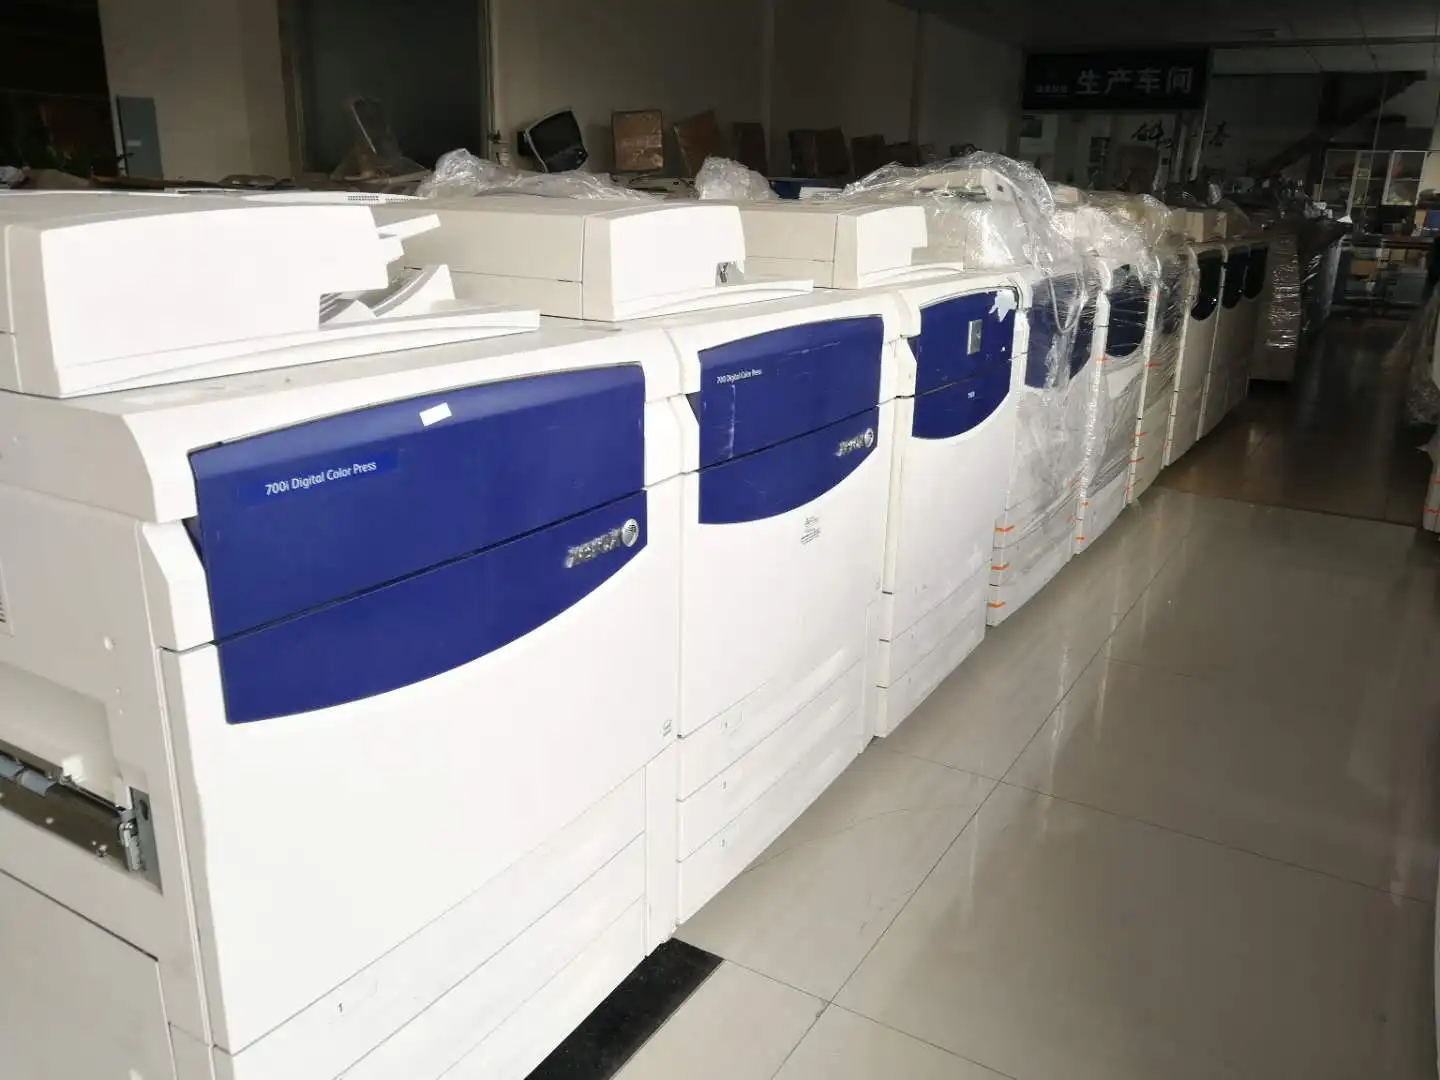 Оптовая продажа, копировальный аппарат для цифрового прессования xerox 700 в copiers docucolor 700i, машина для производства цветных лазерных фотоаппаратов